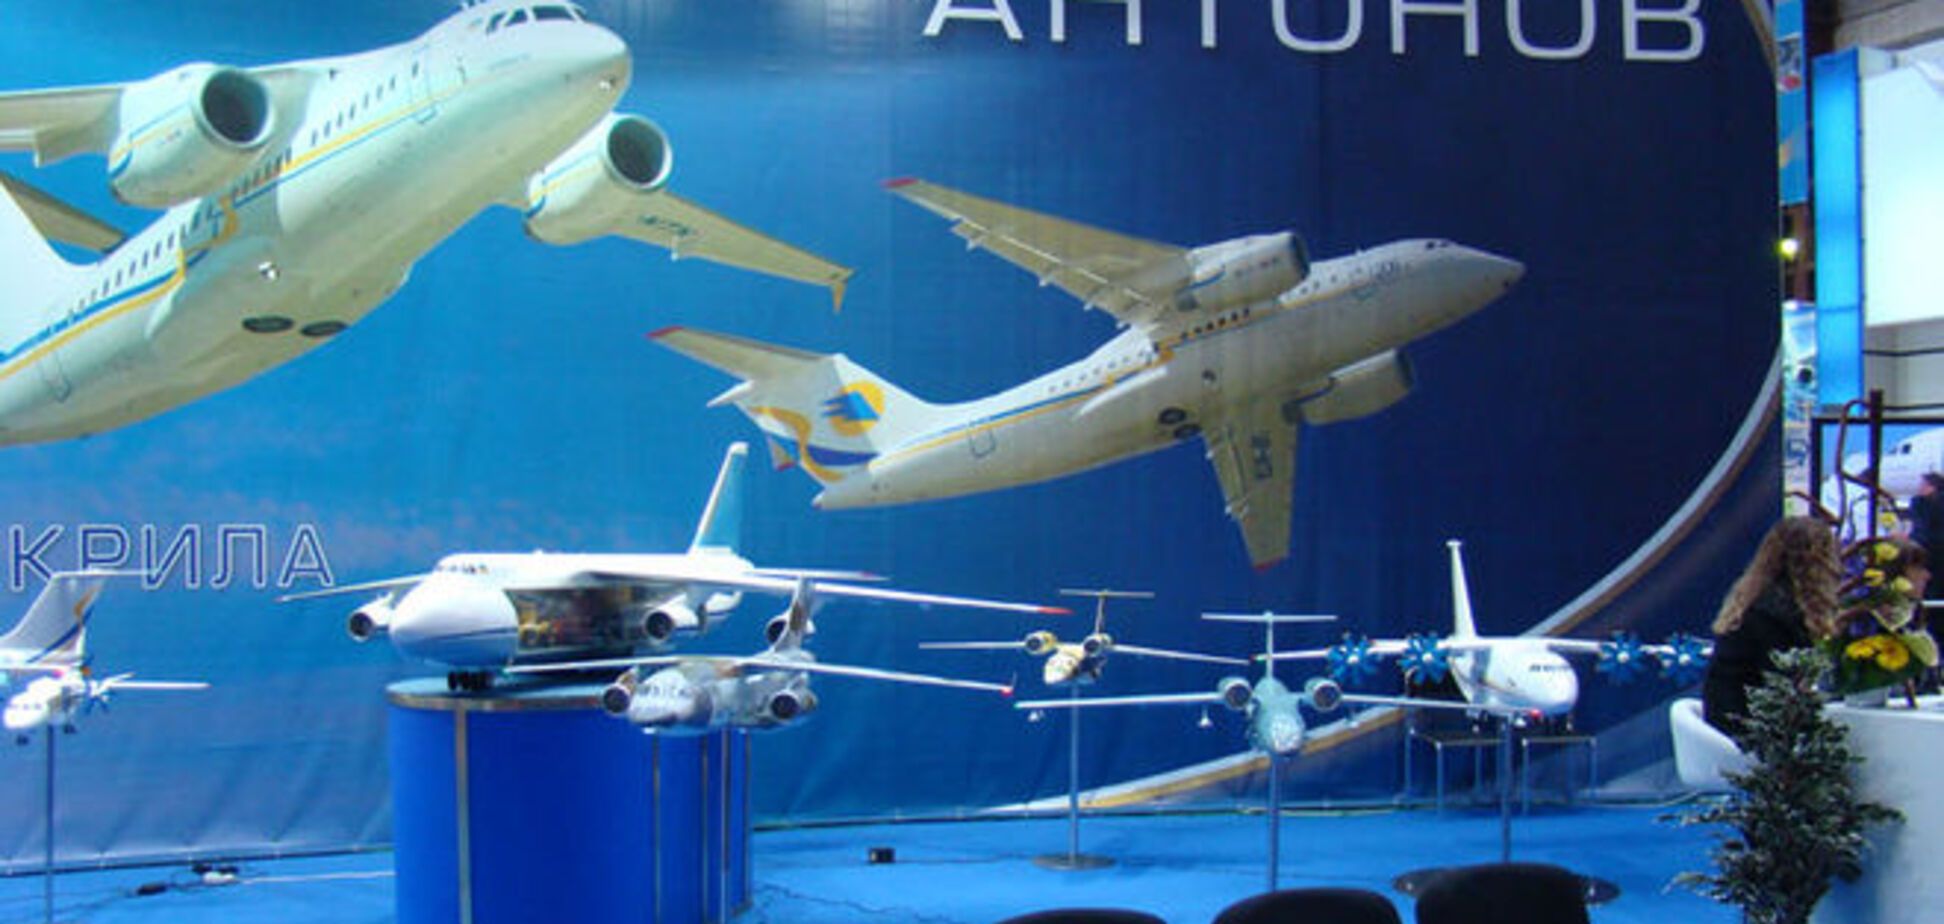 'Антонов' обещает выпускать в 12 раз больше самолетов в год